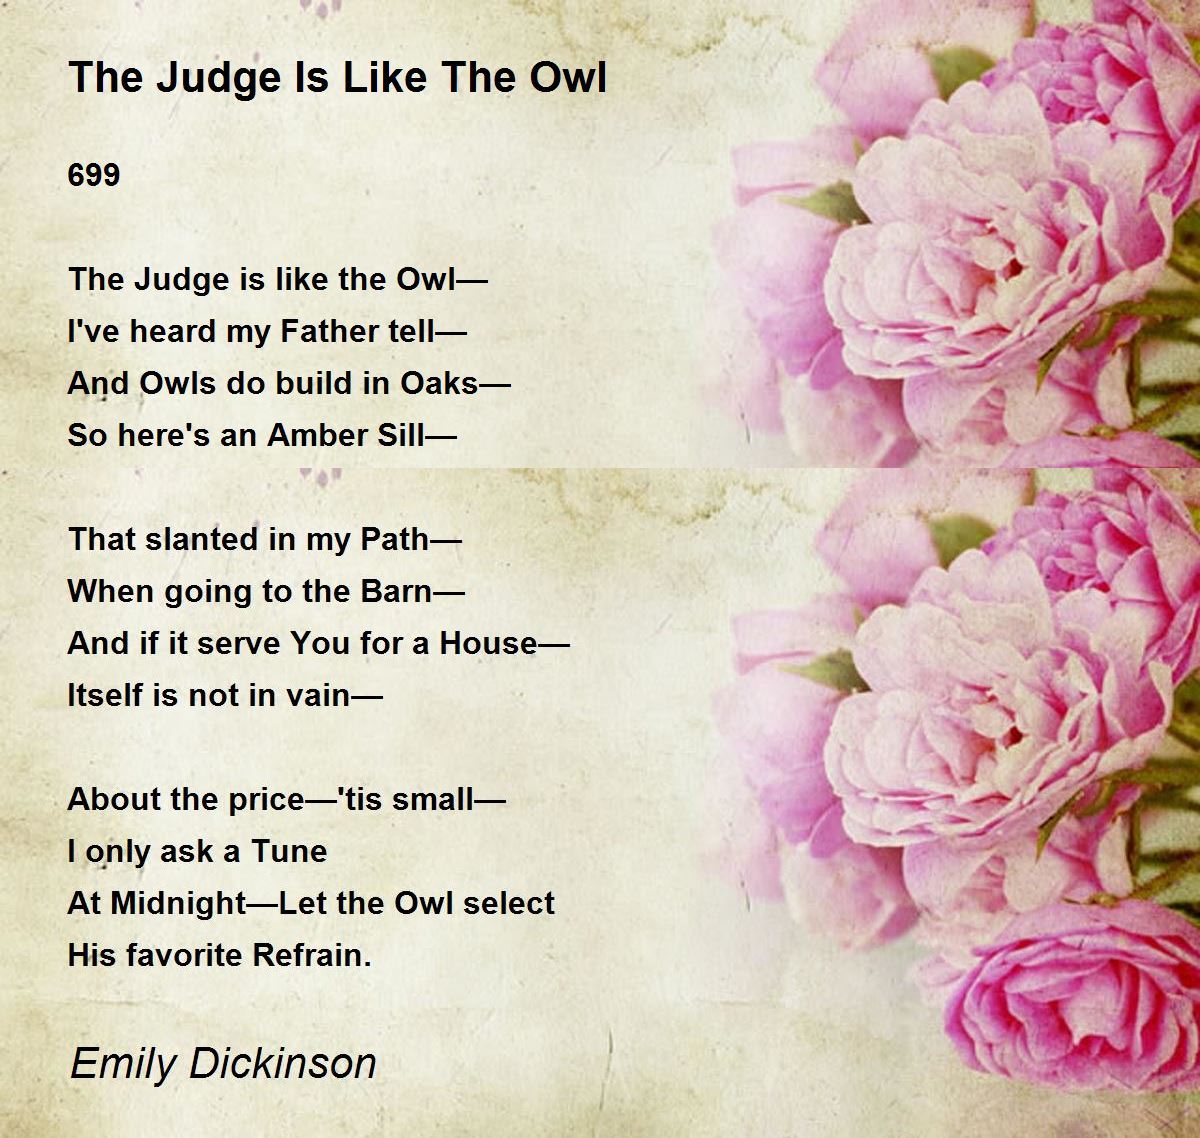 Poems About Owl - Owl Unit Ideas Plus Owls Poem Pdf Crafts Owl Poems Presch...